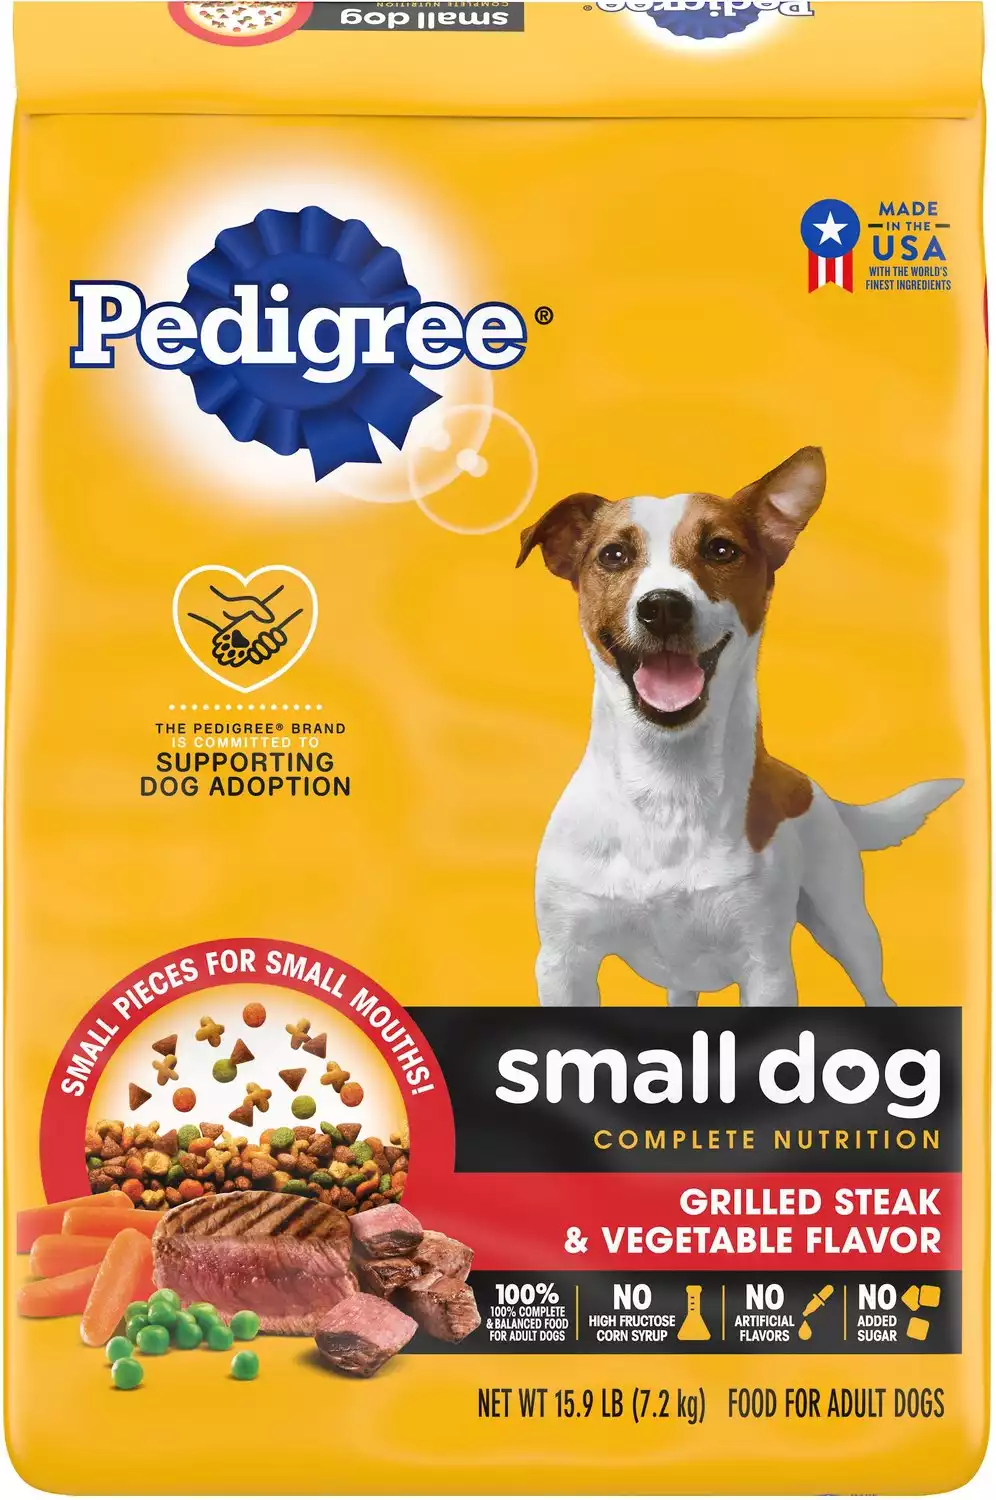 Pedigree Small Dog Complete Nutrition Grilled Steak & Vegetable Flavor